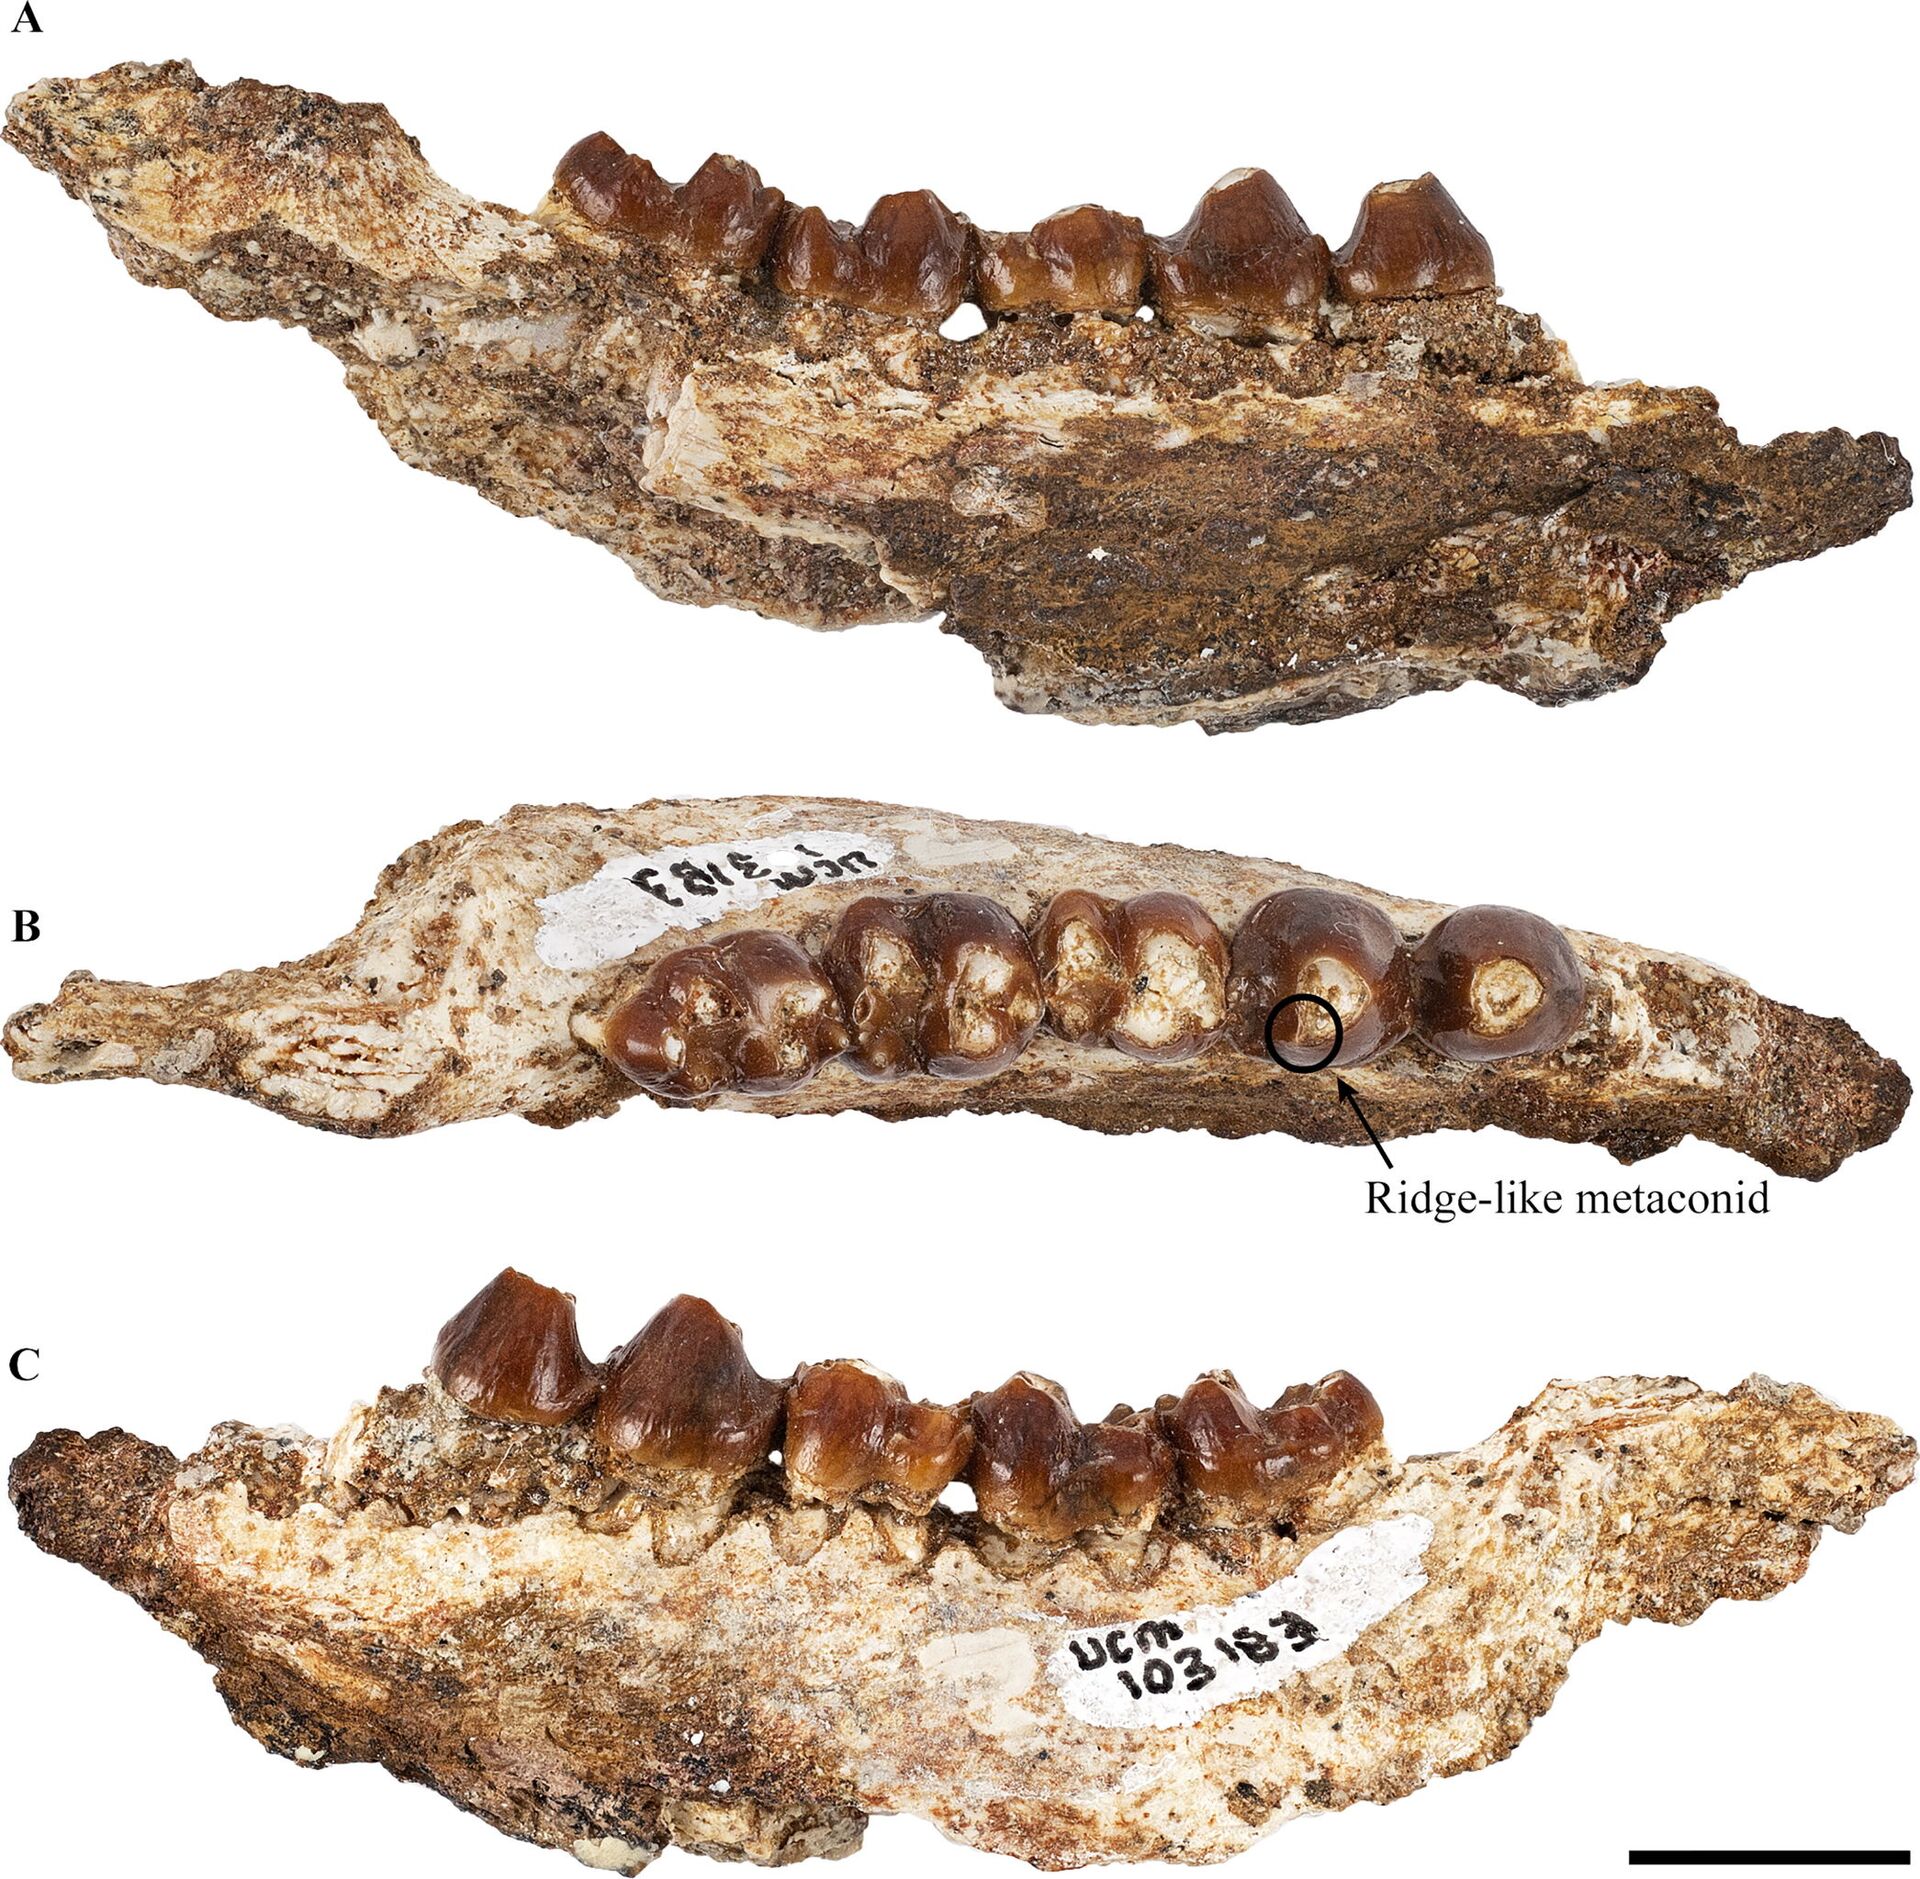 Paleontólogos descobrem 3 novas espécies de mamíferos antigos (FOTO) - Sputnik Brasil, 1920, 18.08.2021